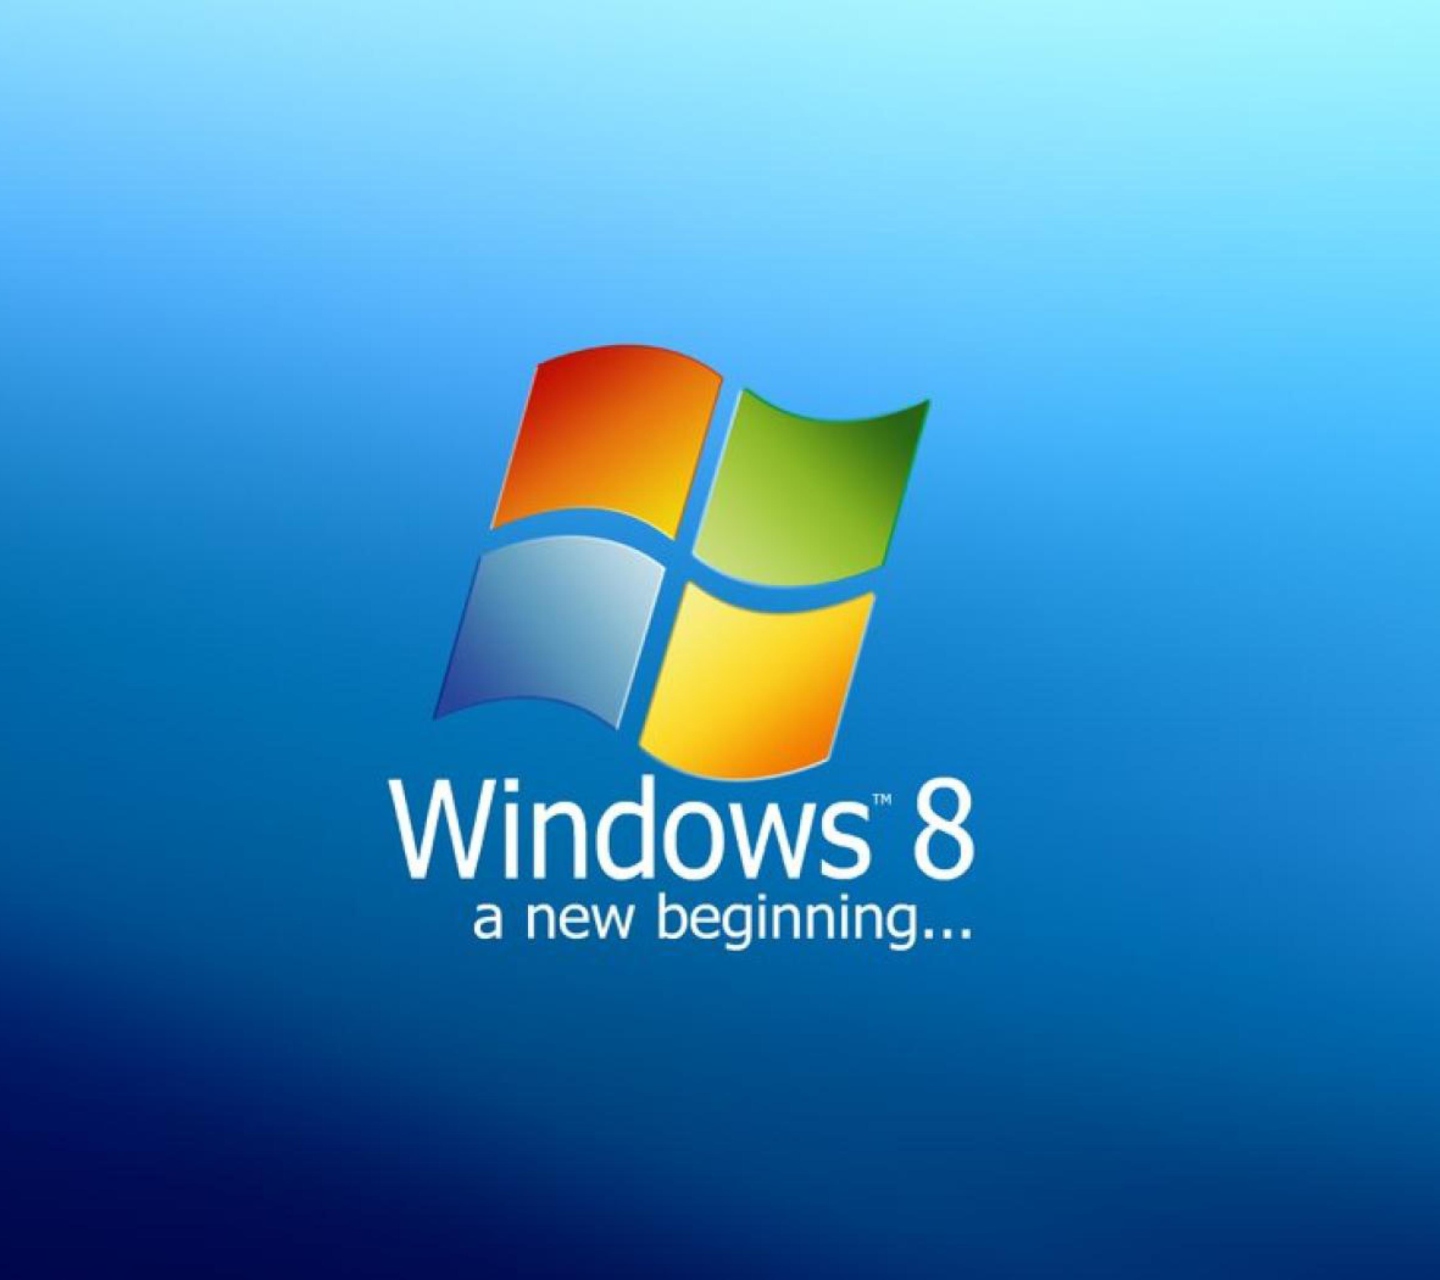 A New Beginning Windows 8 screenshot #1 1440x1280